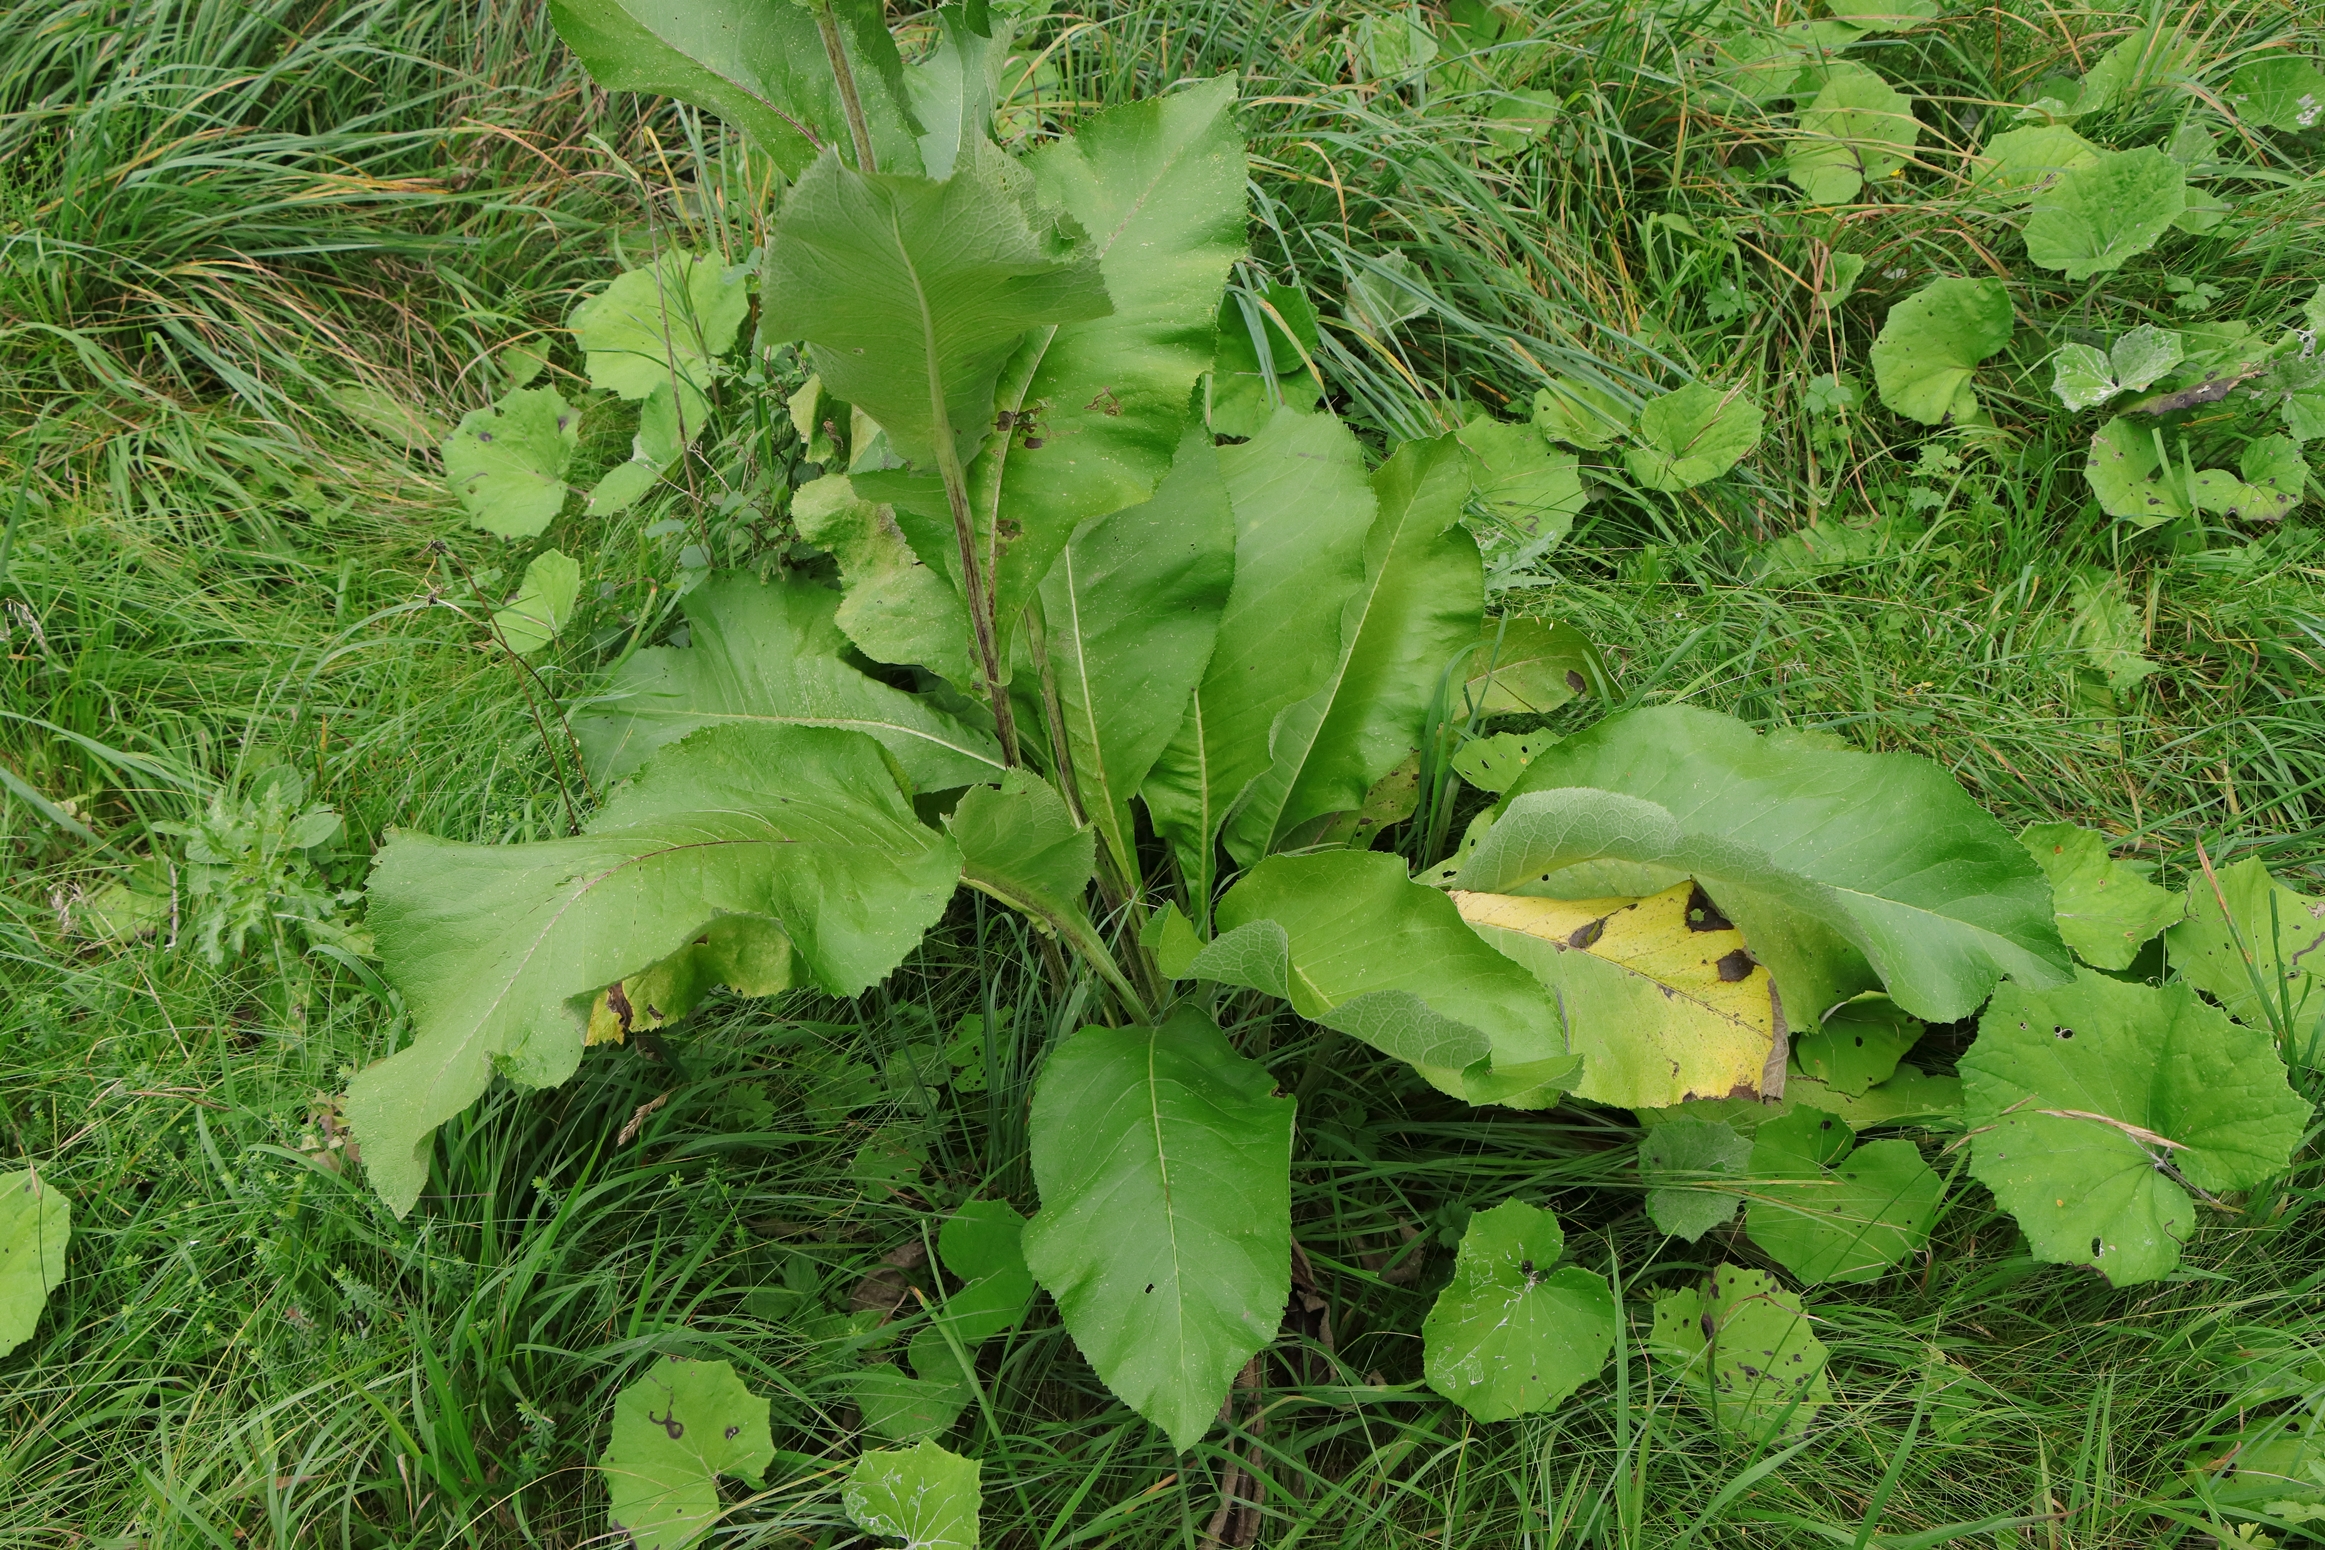 Die Blätter des Alants sind grün gefärbt und laufen am Ende spitz zusammen. Sie haben eine längliche Form und einen leicht gewellten Rand. Die Pflanze wächst auf einer Wiese mit langen Gräsern.